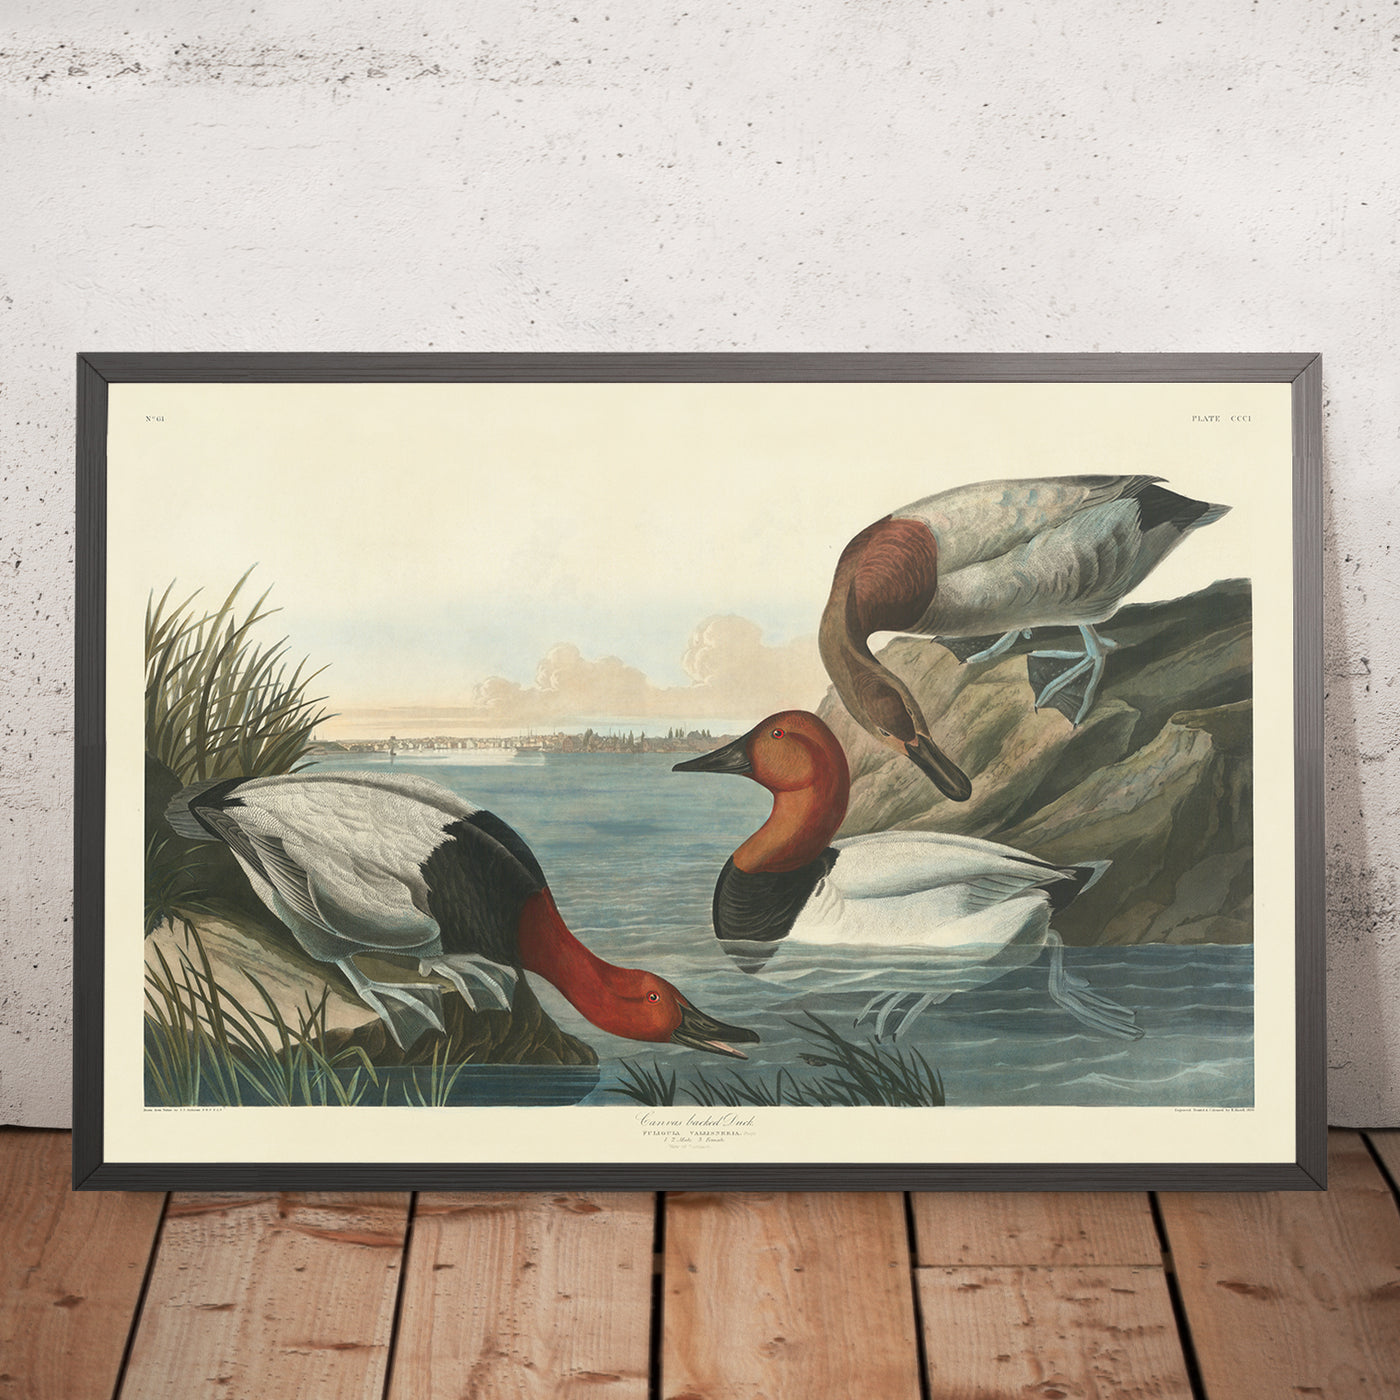 Pato con respaldo de lienzo de John James Audubon, 1827